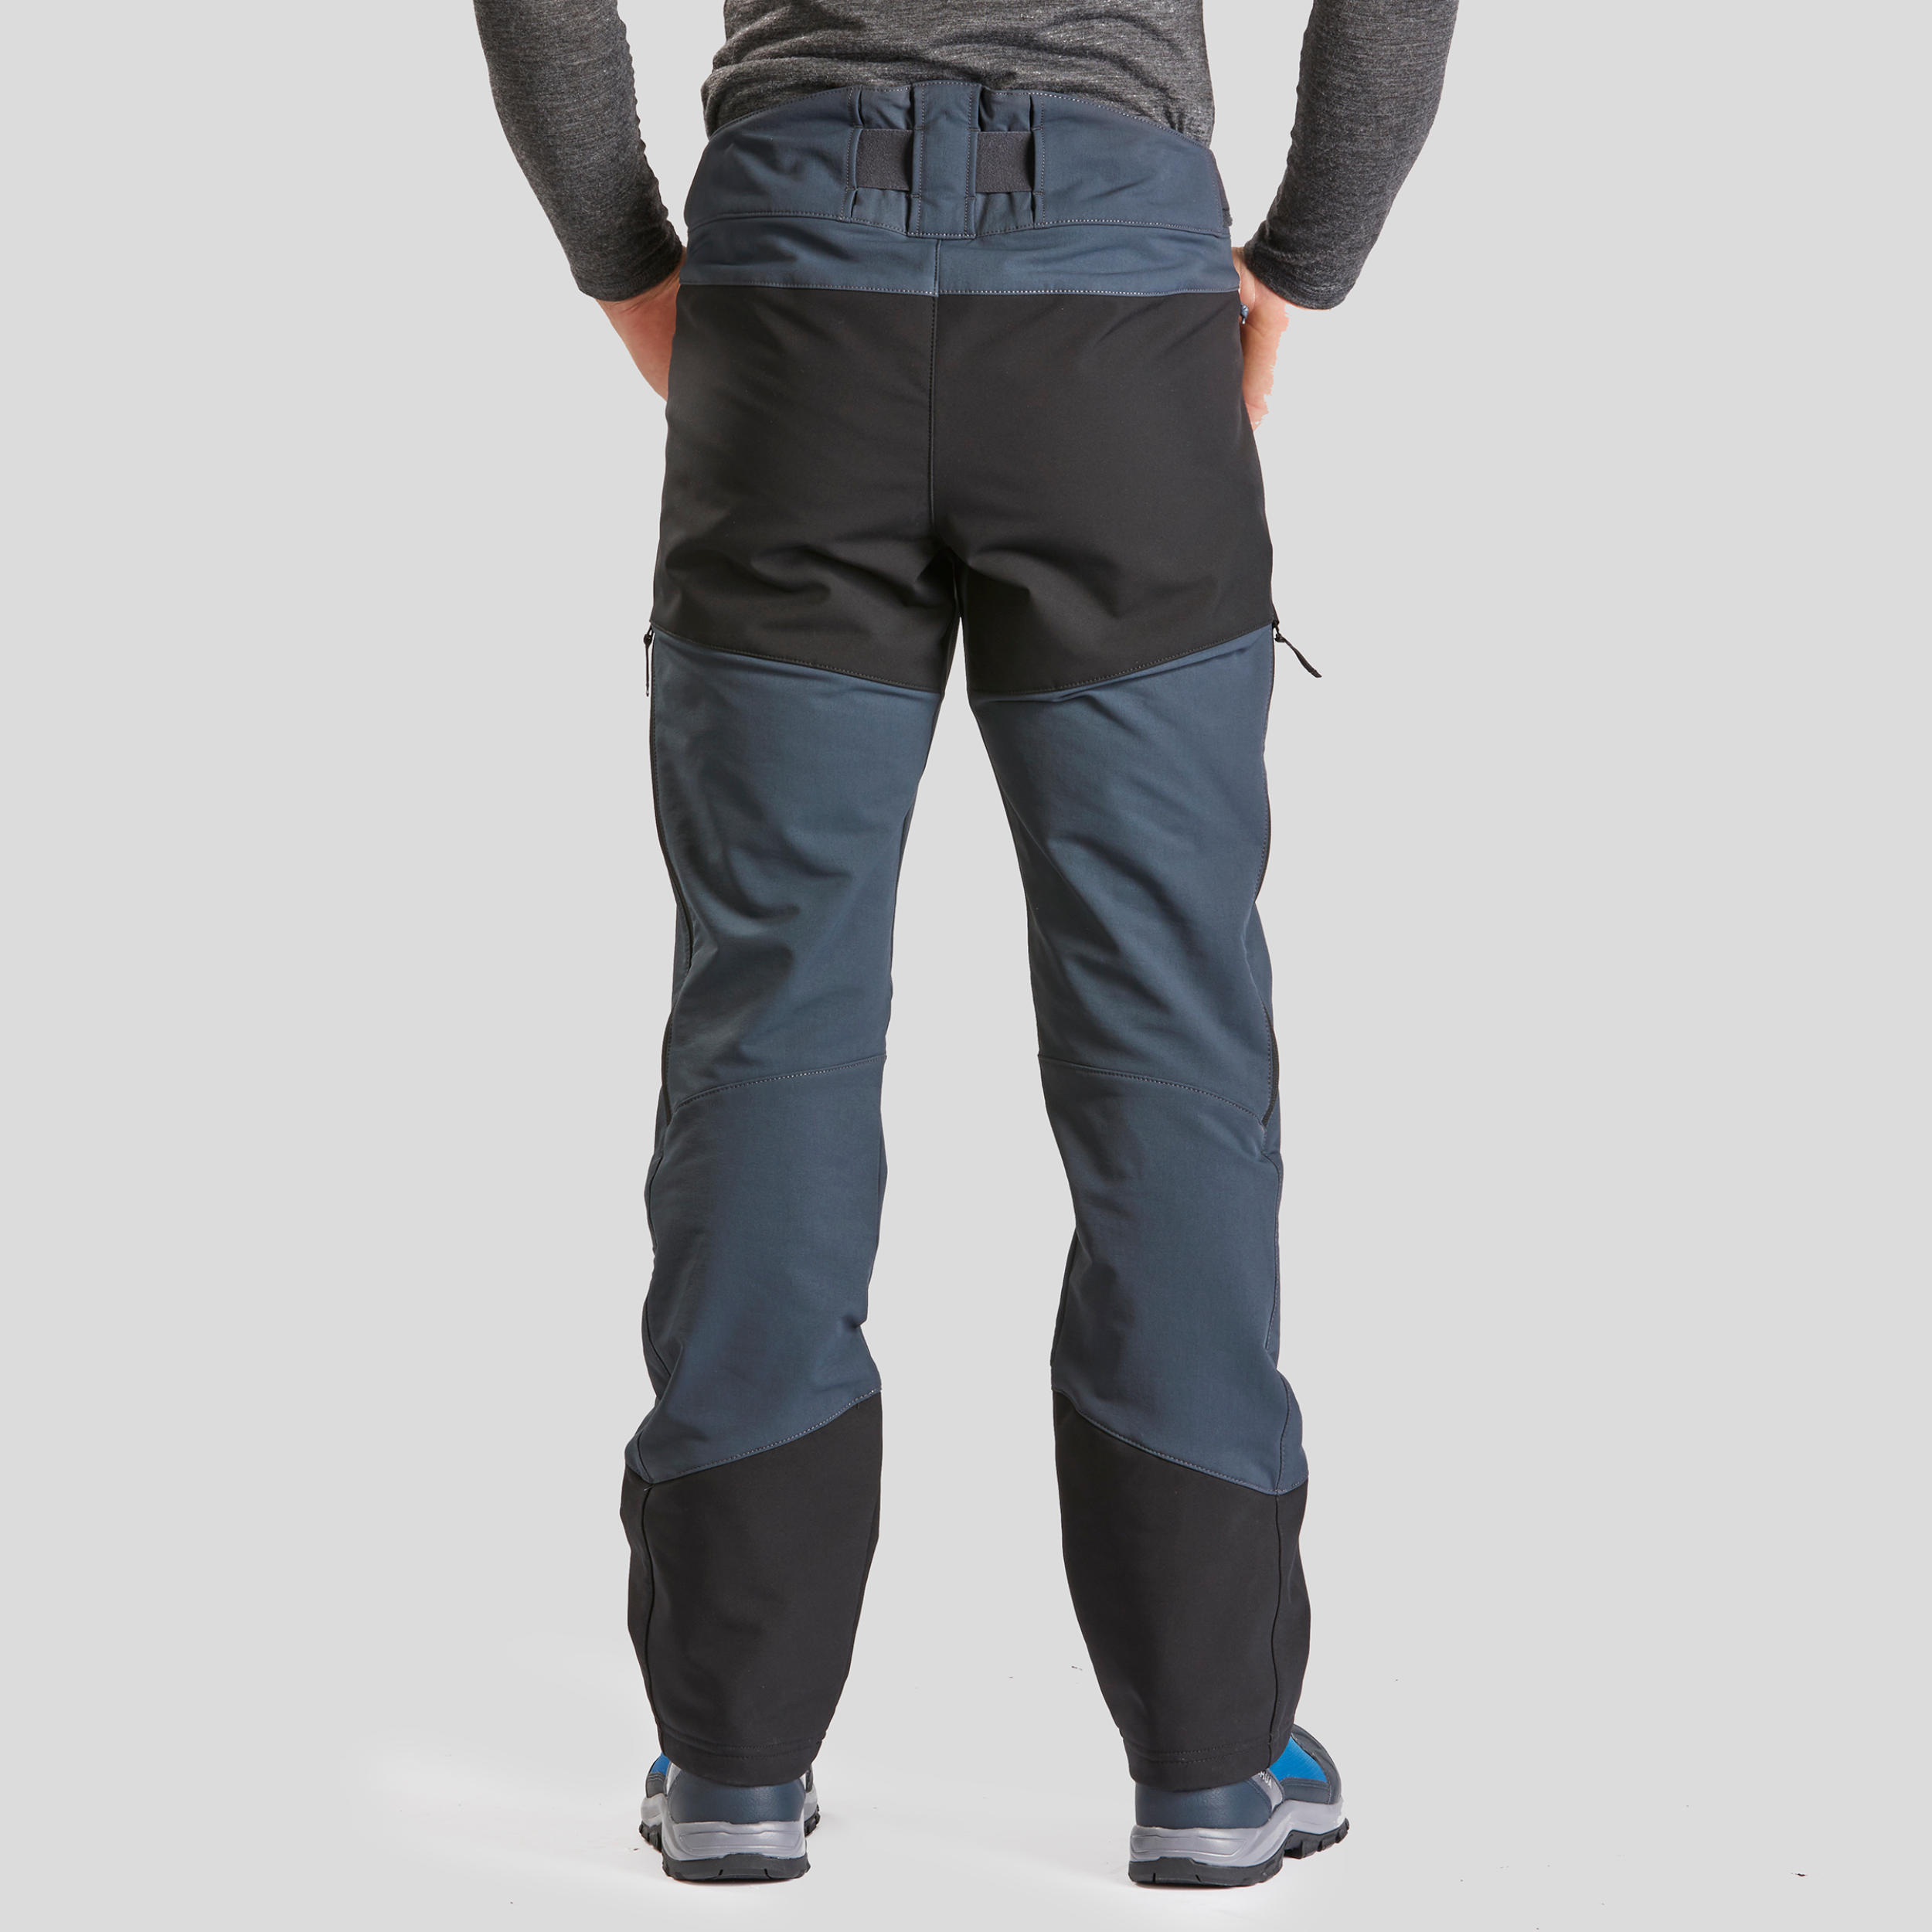 Pantalon chaud femme – SH 500 gris - Gris carbone - Quechua